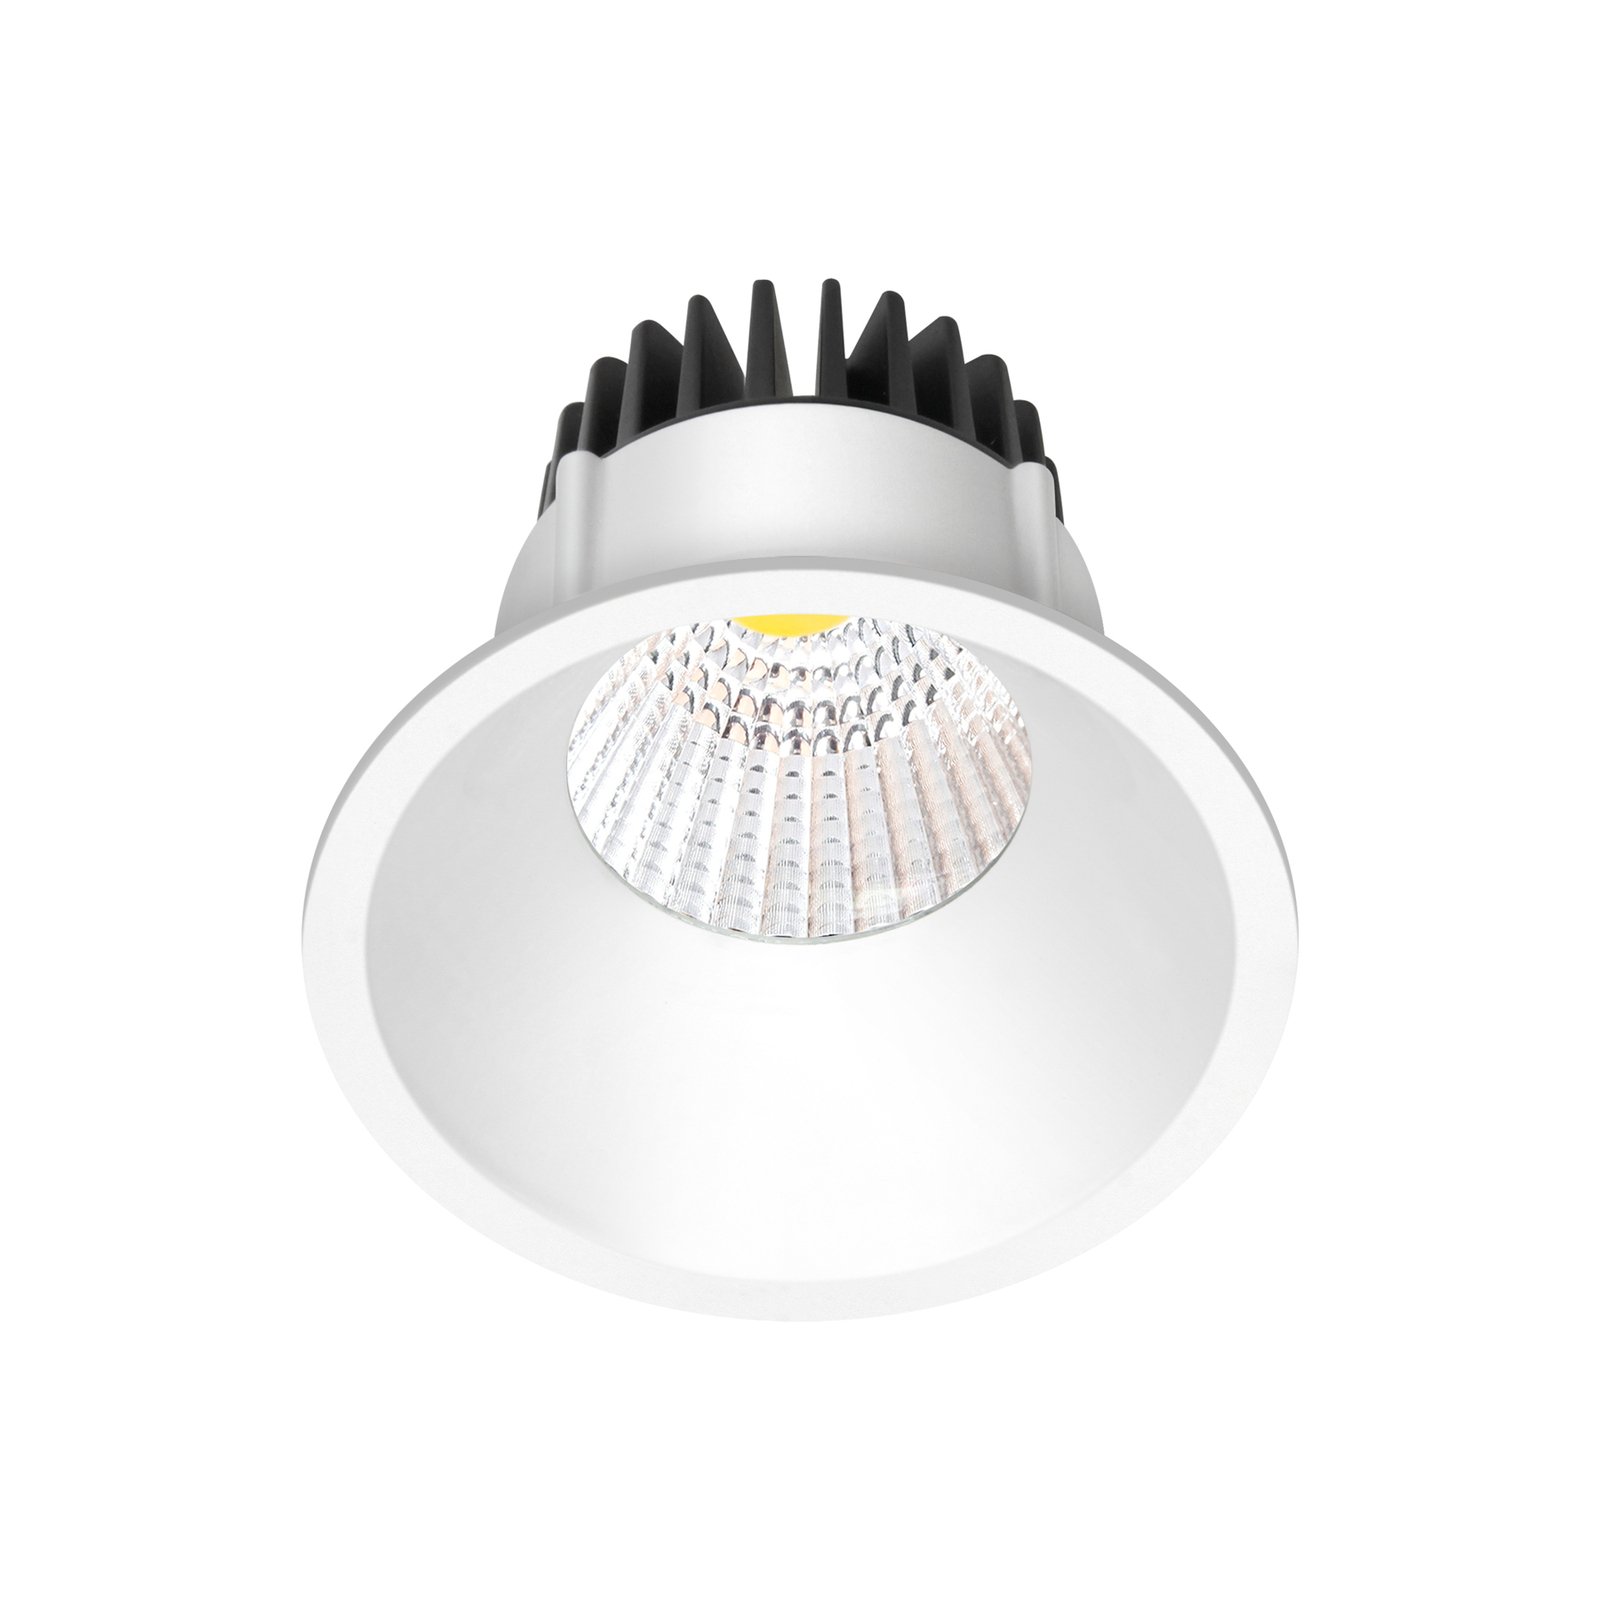 Arcchio LED downlight Niria, white, 4,000K